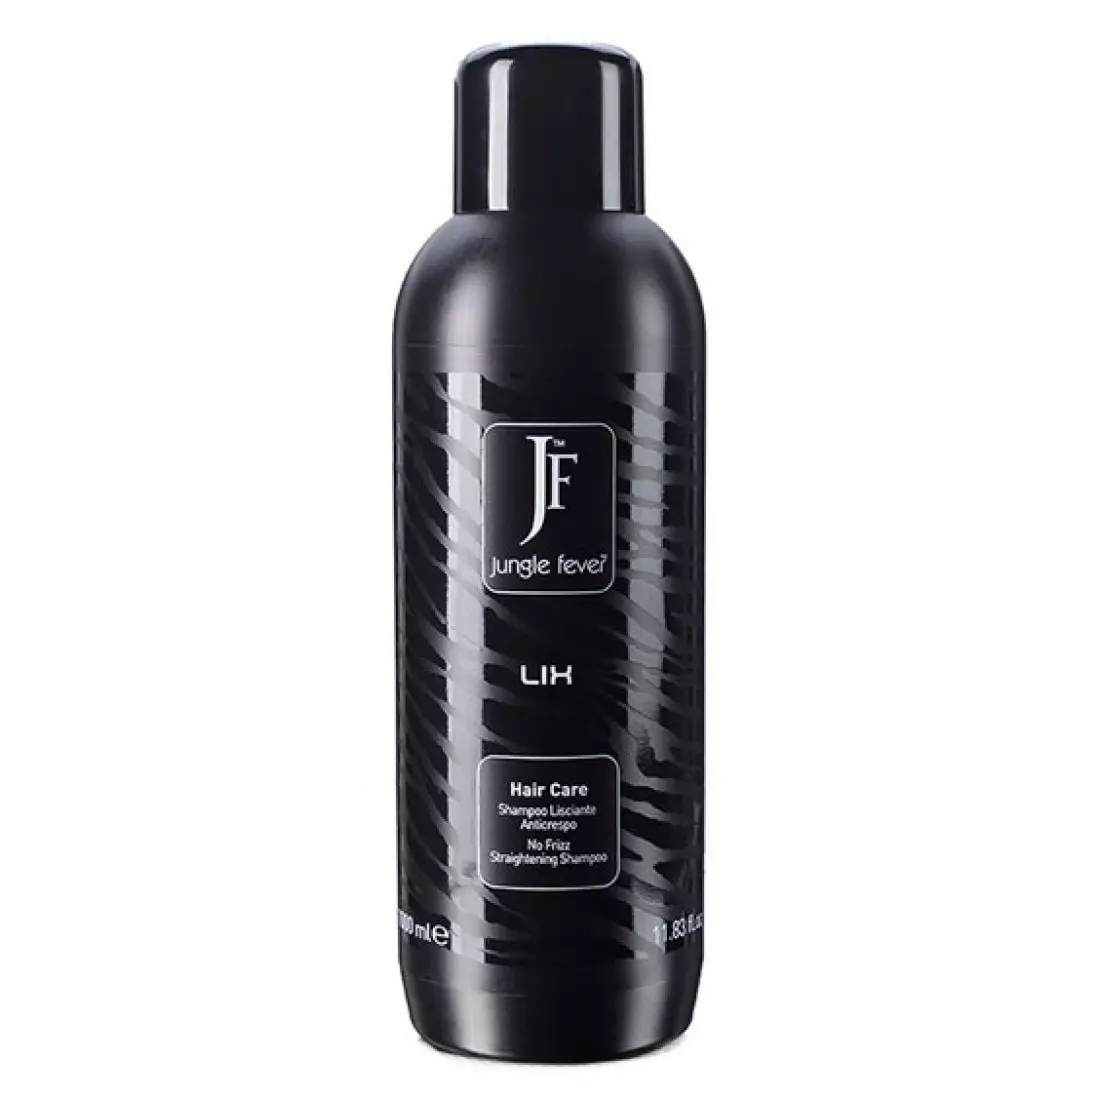 Shampoo raddrizzamento dei capelli: Revisione degli shampoo leviganti professionali per capelli arrampicati 6069_26